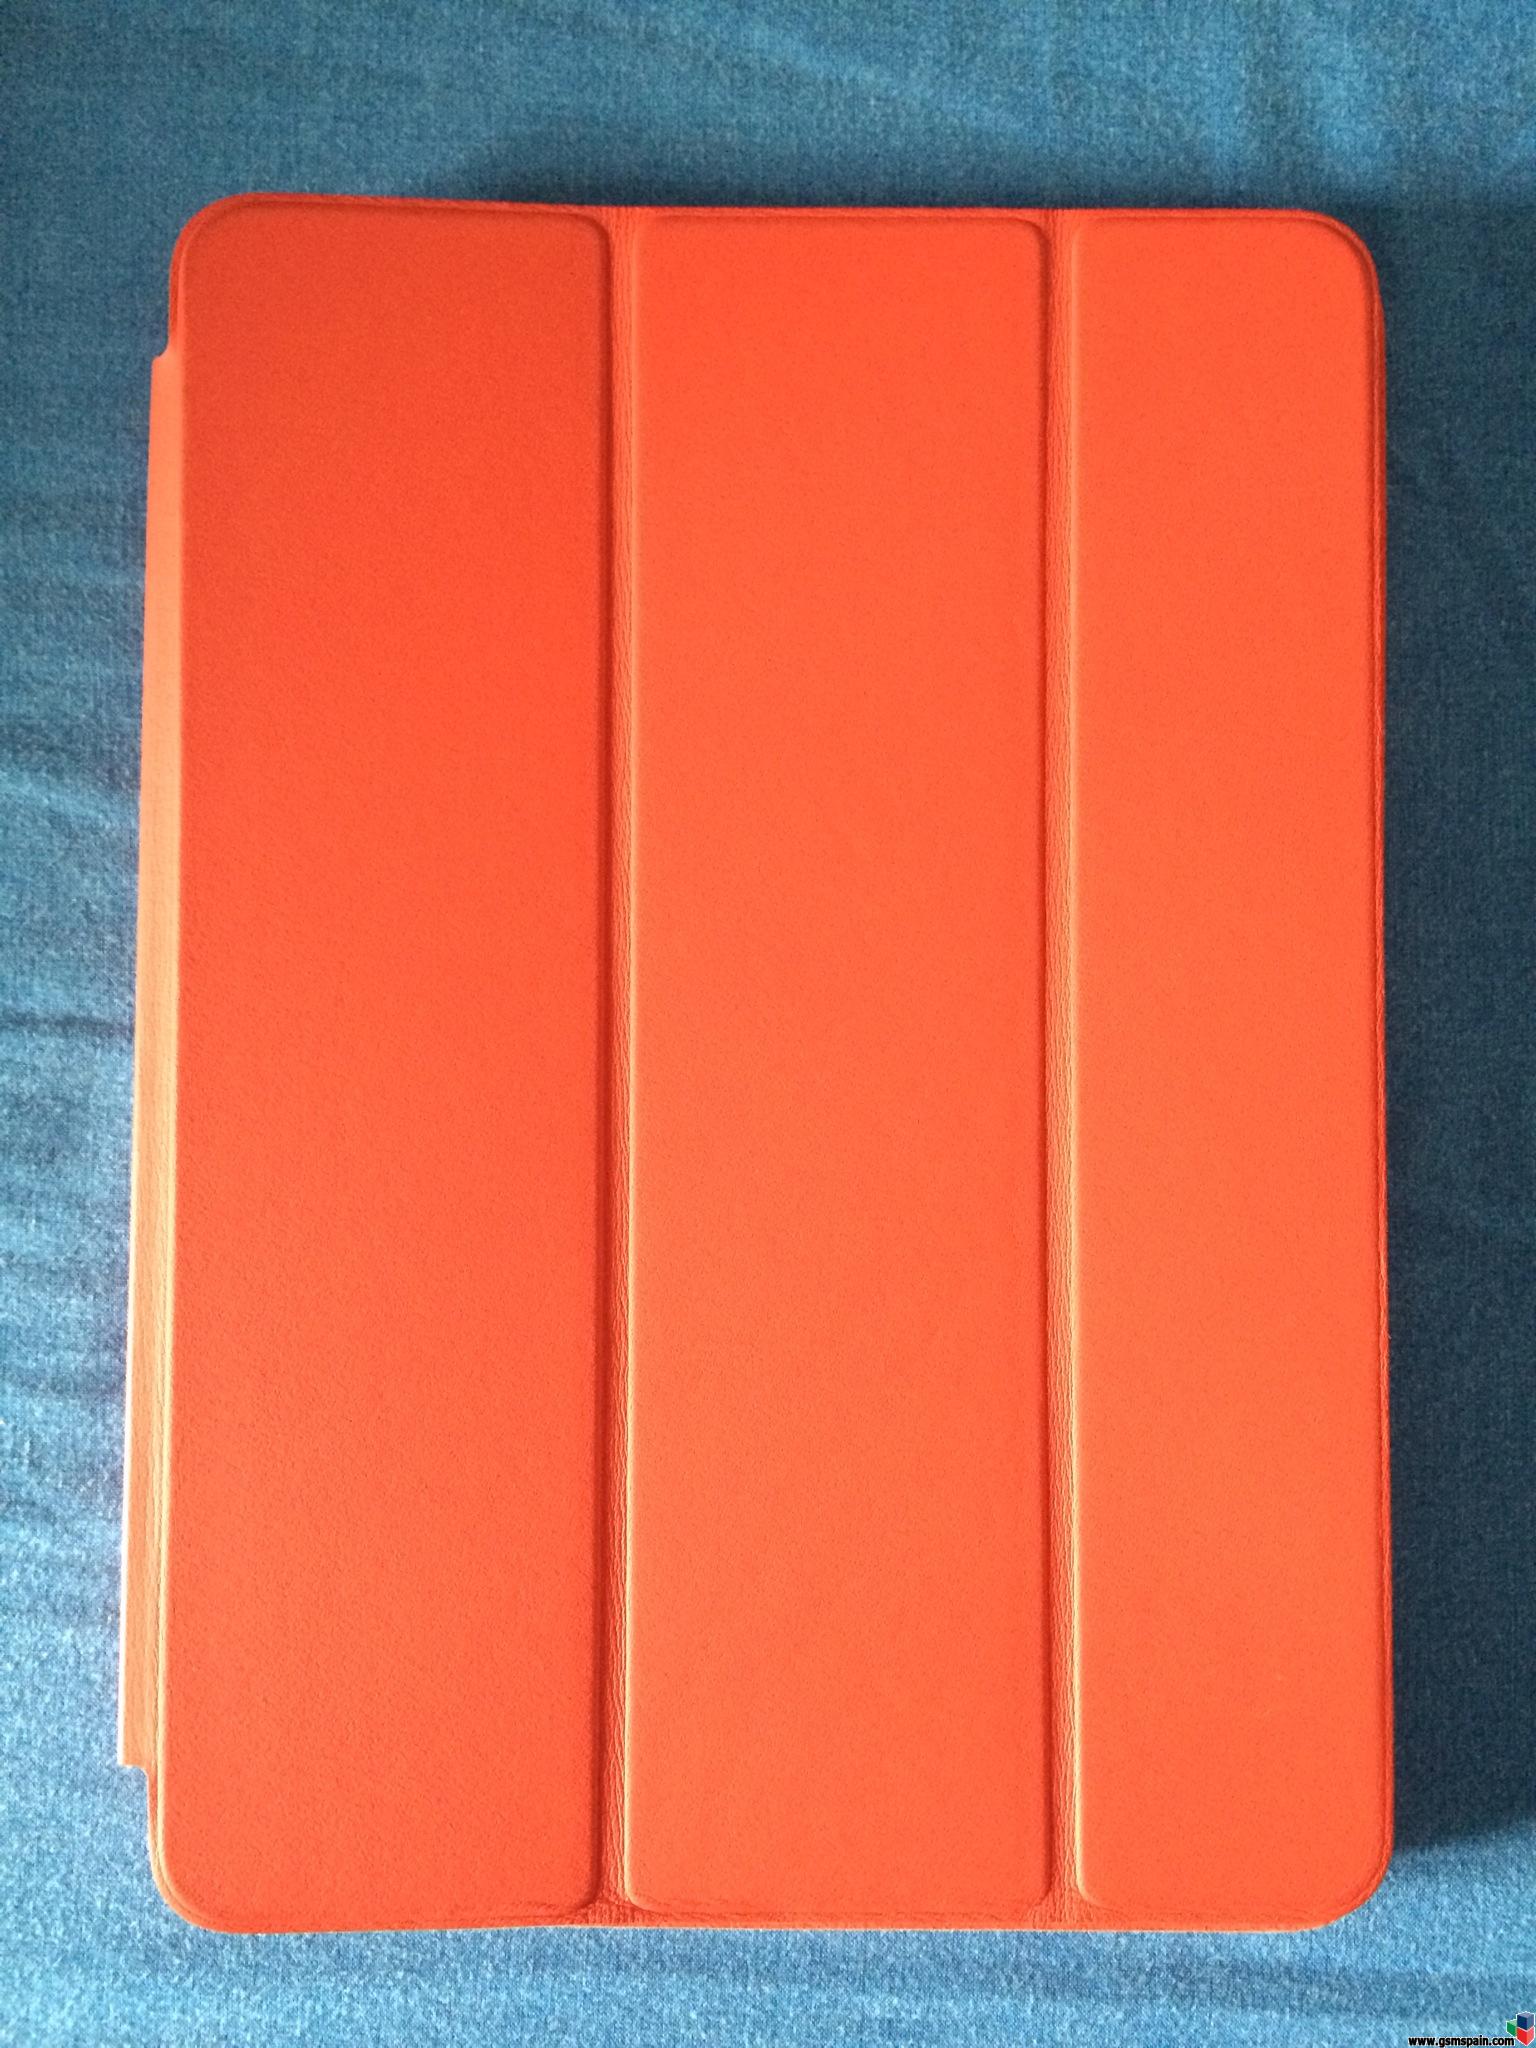 [VENDO] Funda iPad AIR Smart Case de piel y color roja. Nueva oficial de APPLE